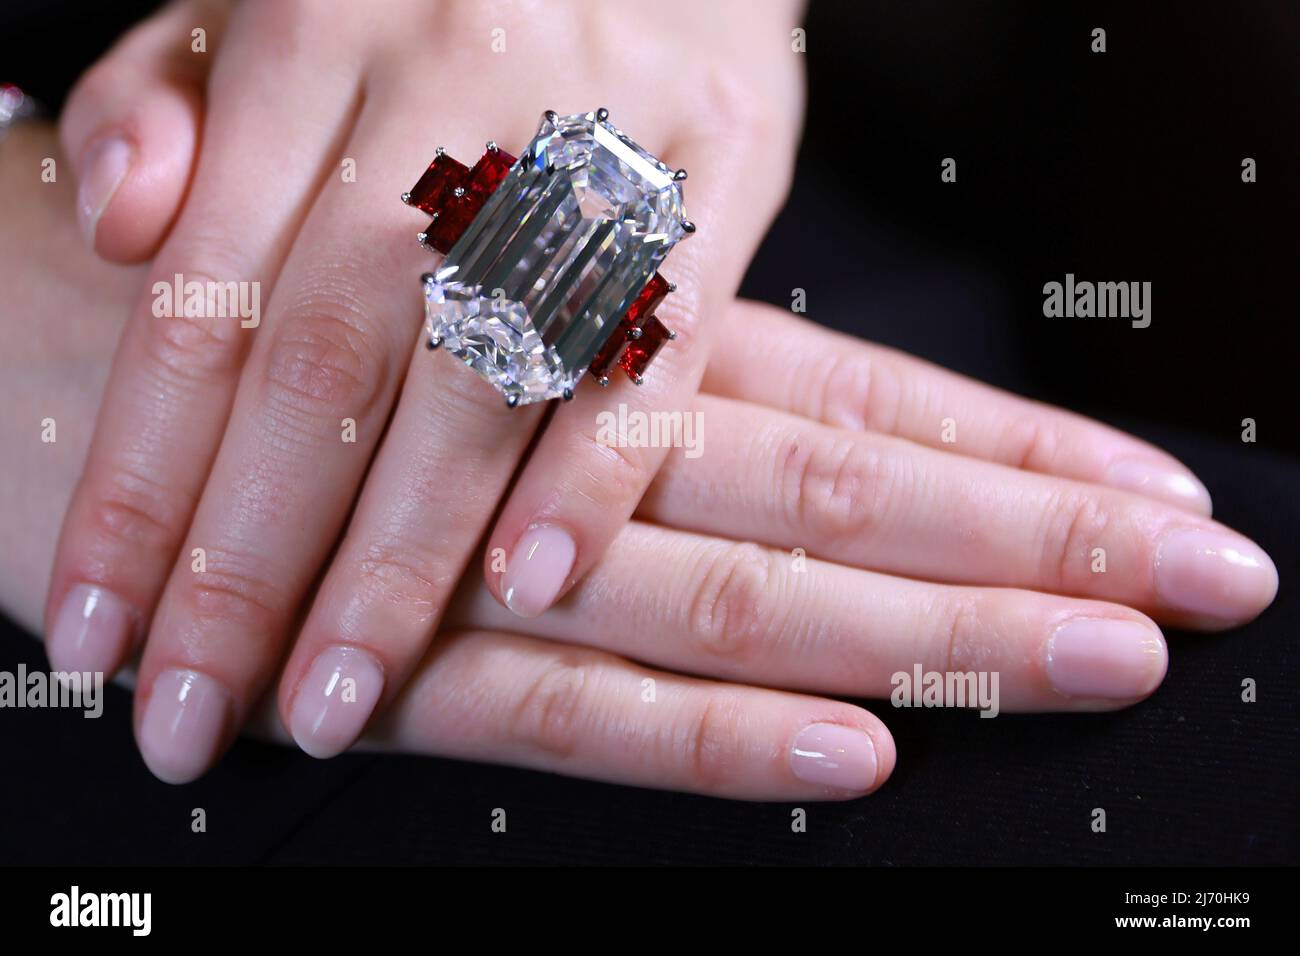 Un modèle possède un magnifique anneau en losange et rubis, fixé avec un  diamant de coupe en escalier de 80,08 carats, et accentué de rubis de coupe  en escalier de 1,11 à